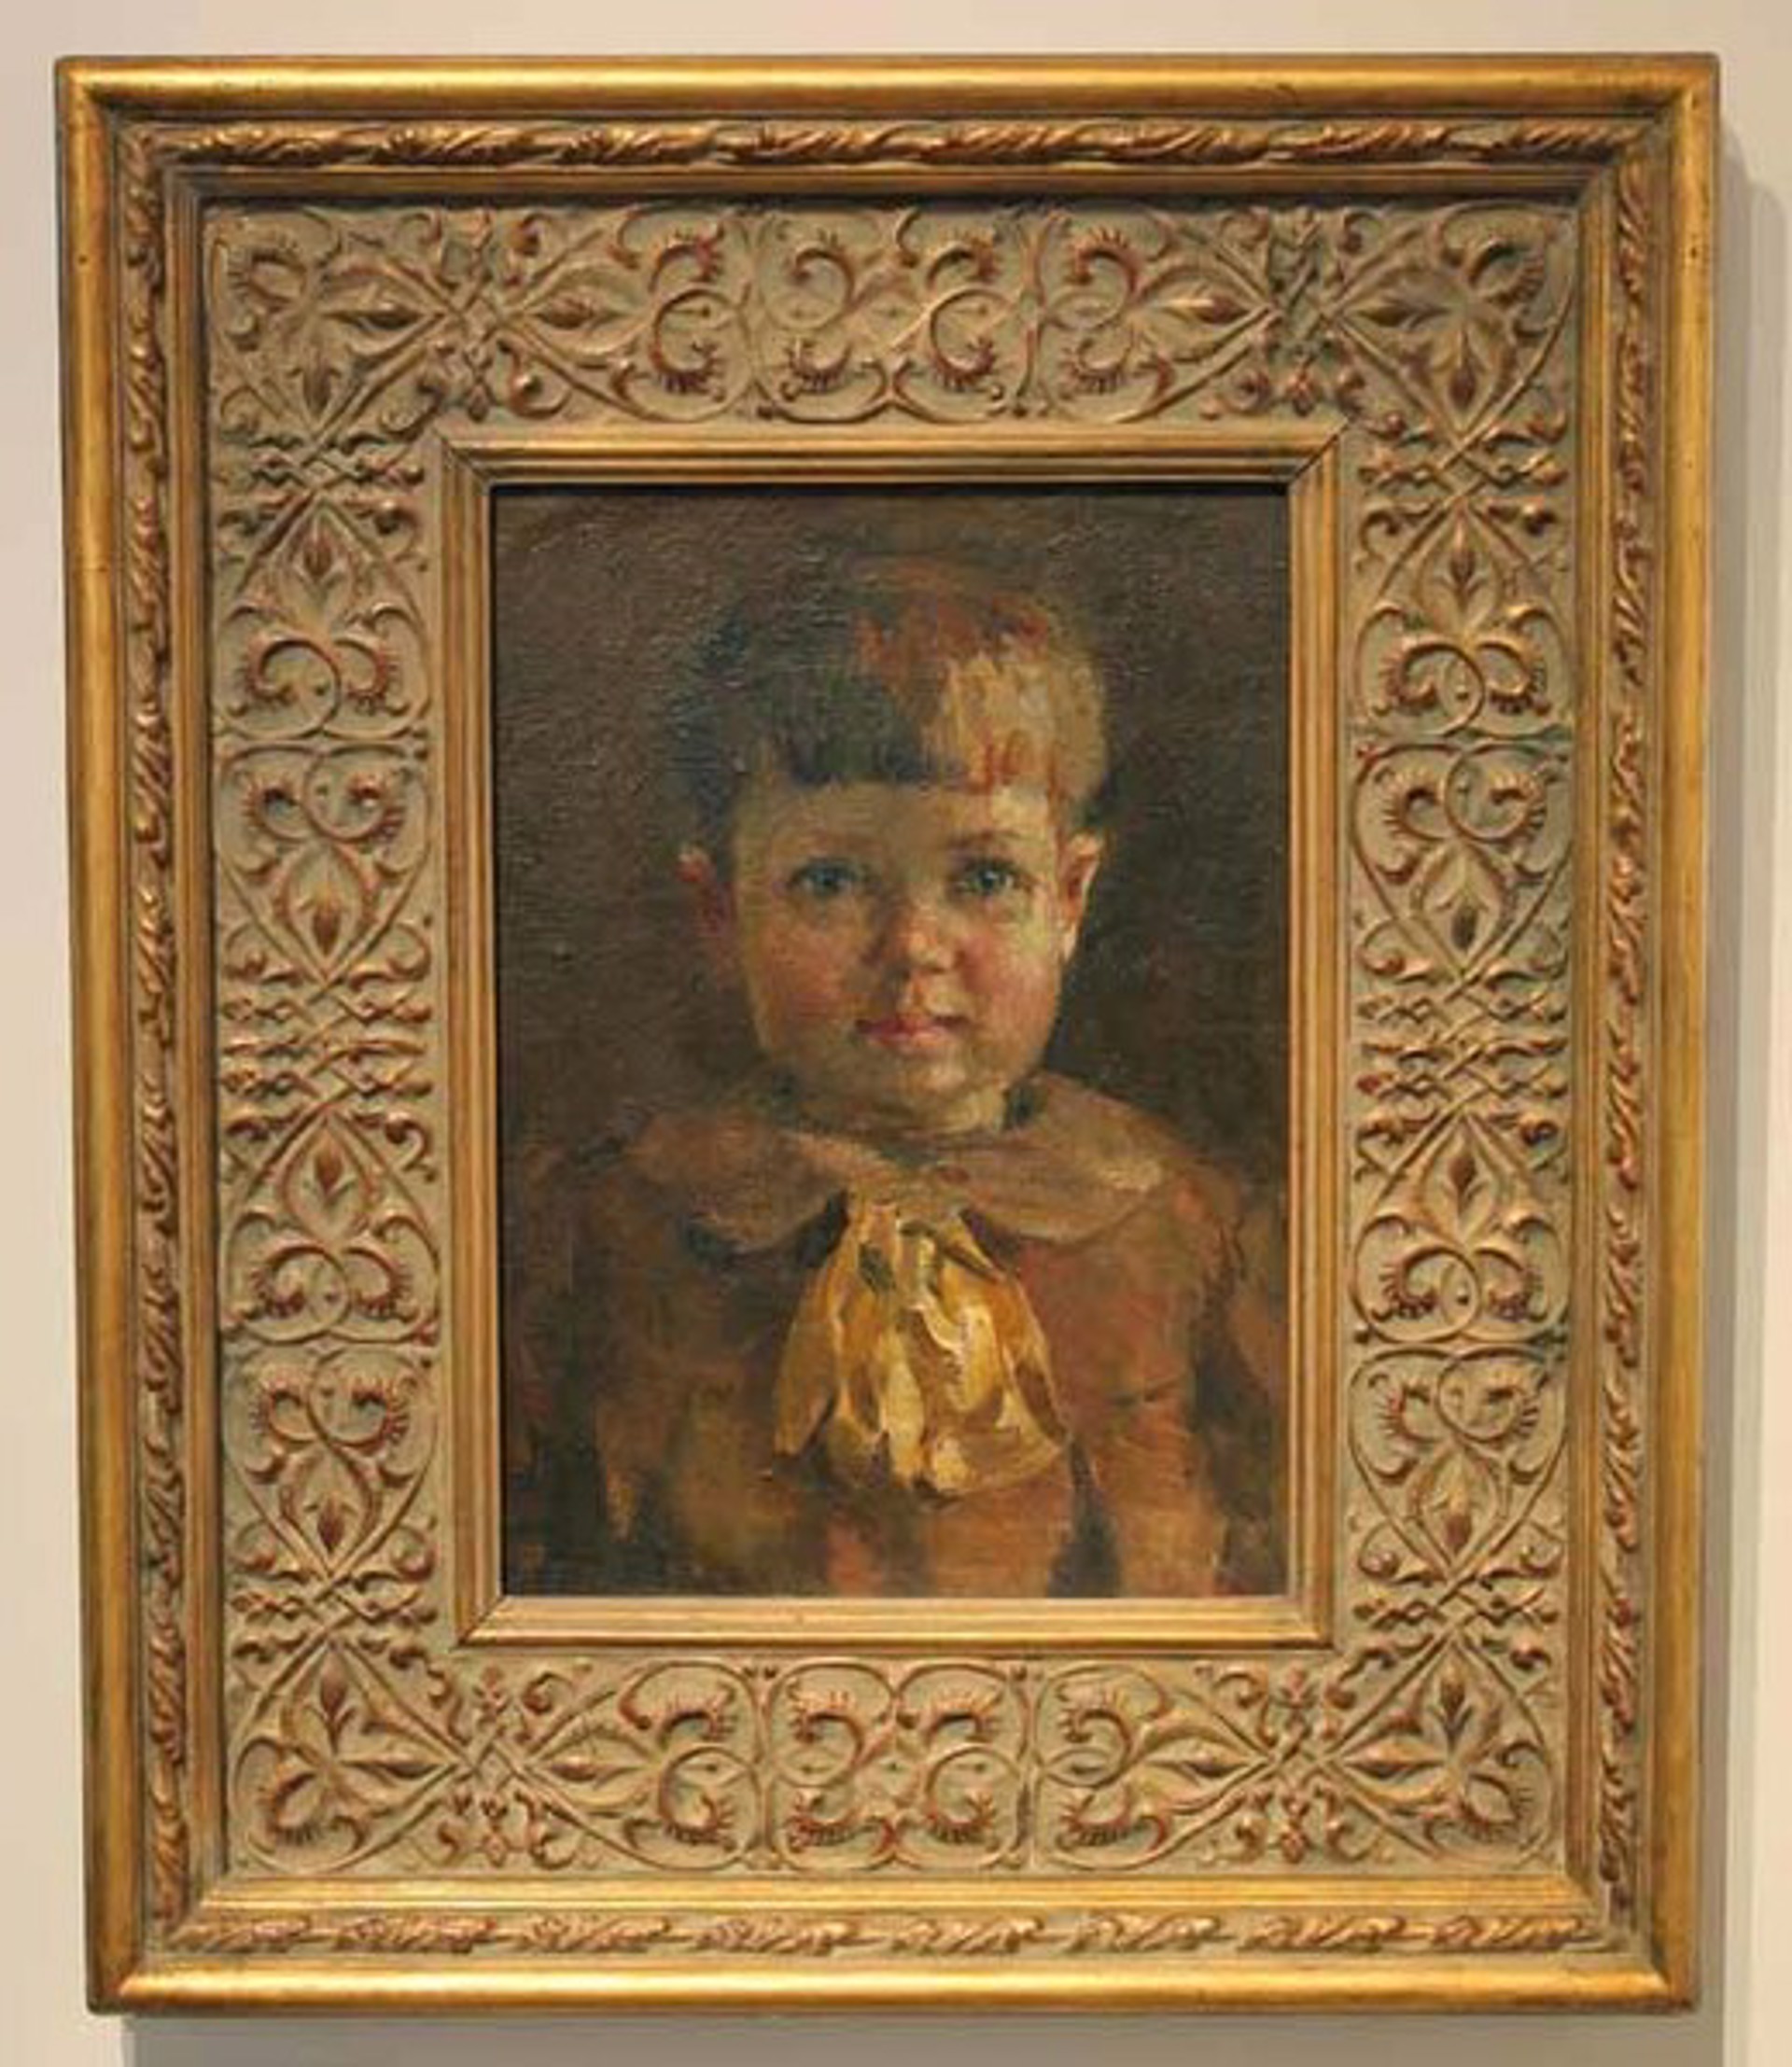 Artist's Child by Vasily Zaichenko